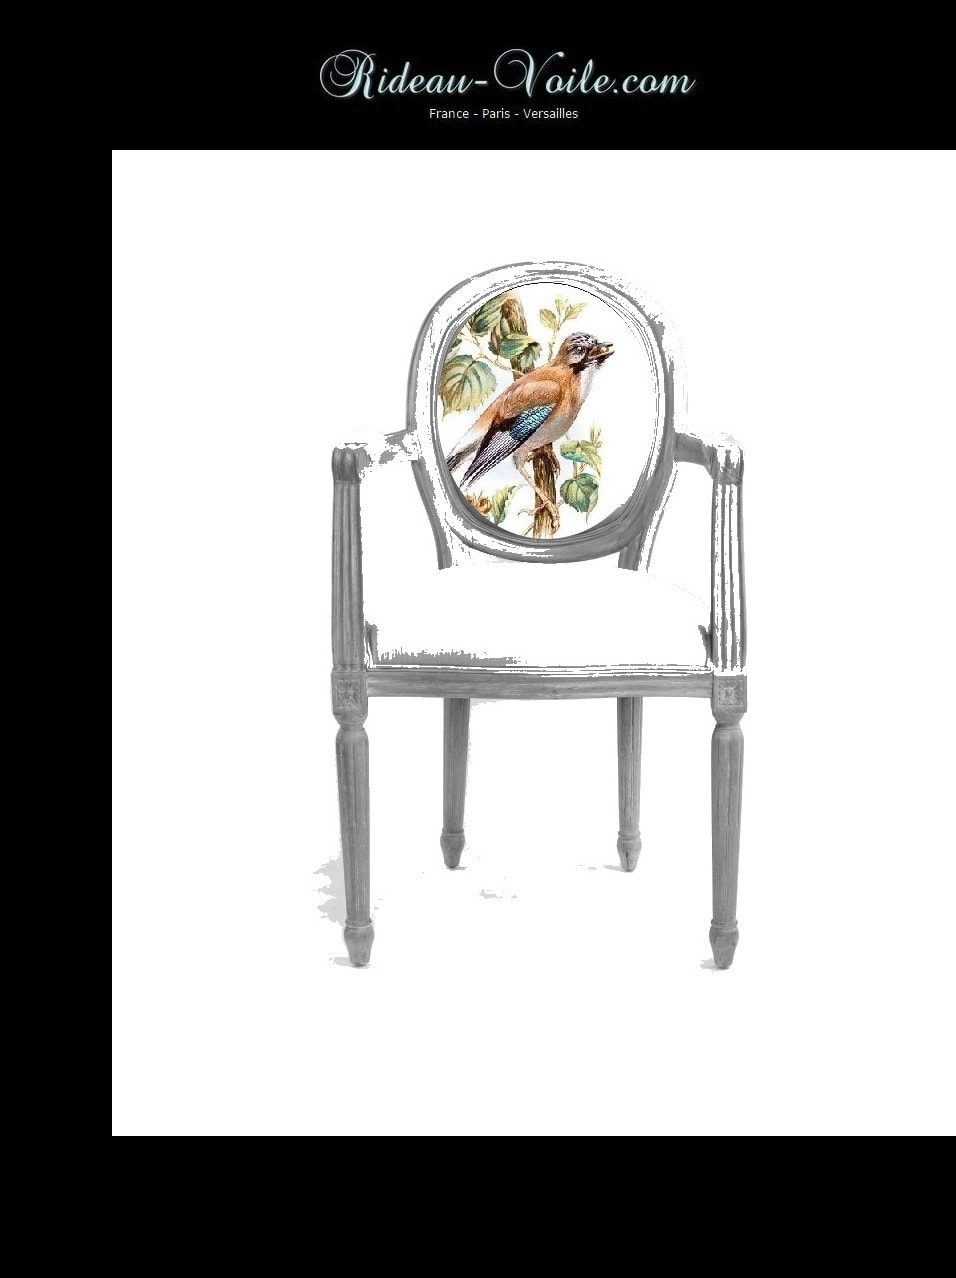 siège cabriolet de style louis 16 xvi XVI Empire décoration fauteuil chaise tissu tapisserie motif oiseaux tapissier médaillon bois hêtre ameublement lin coton dossier assise Paris Versailles France salon antiquaire